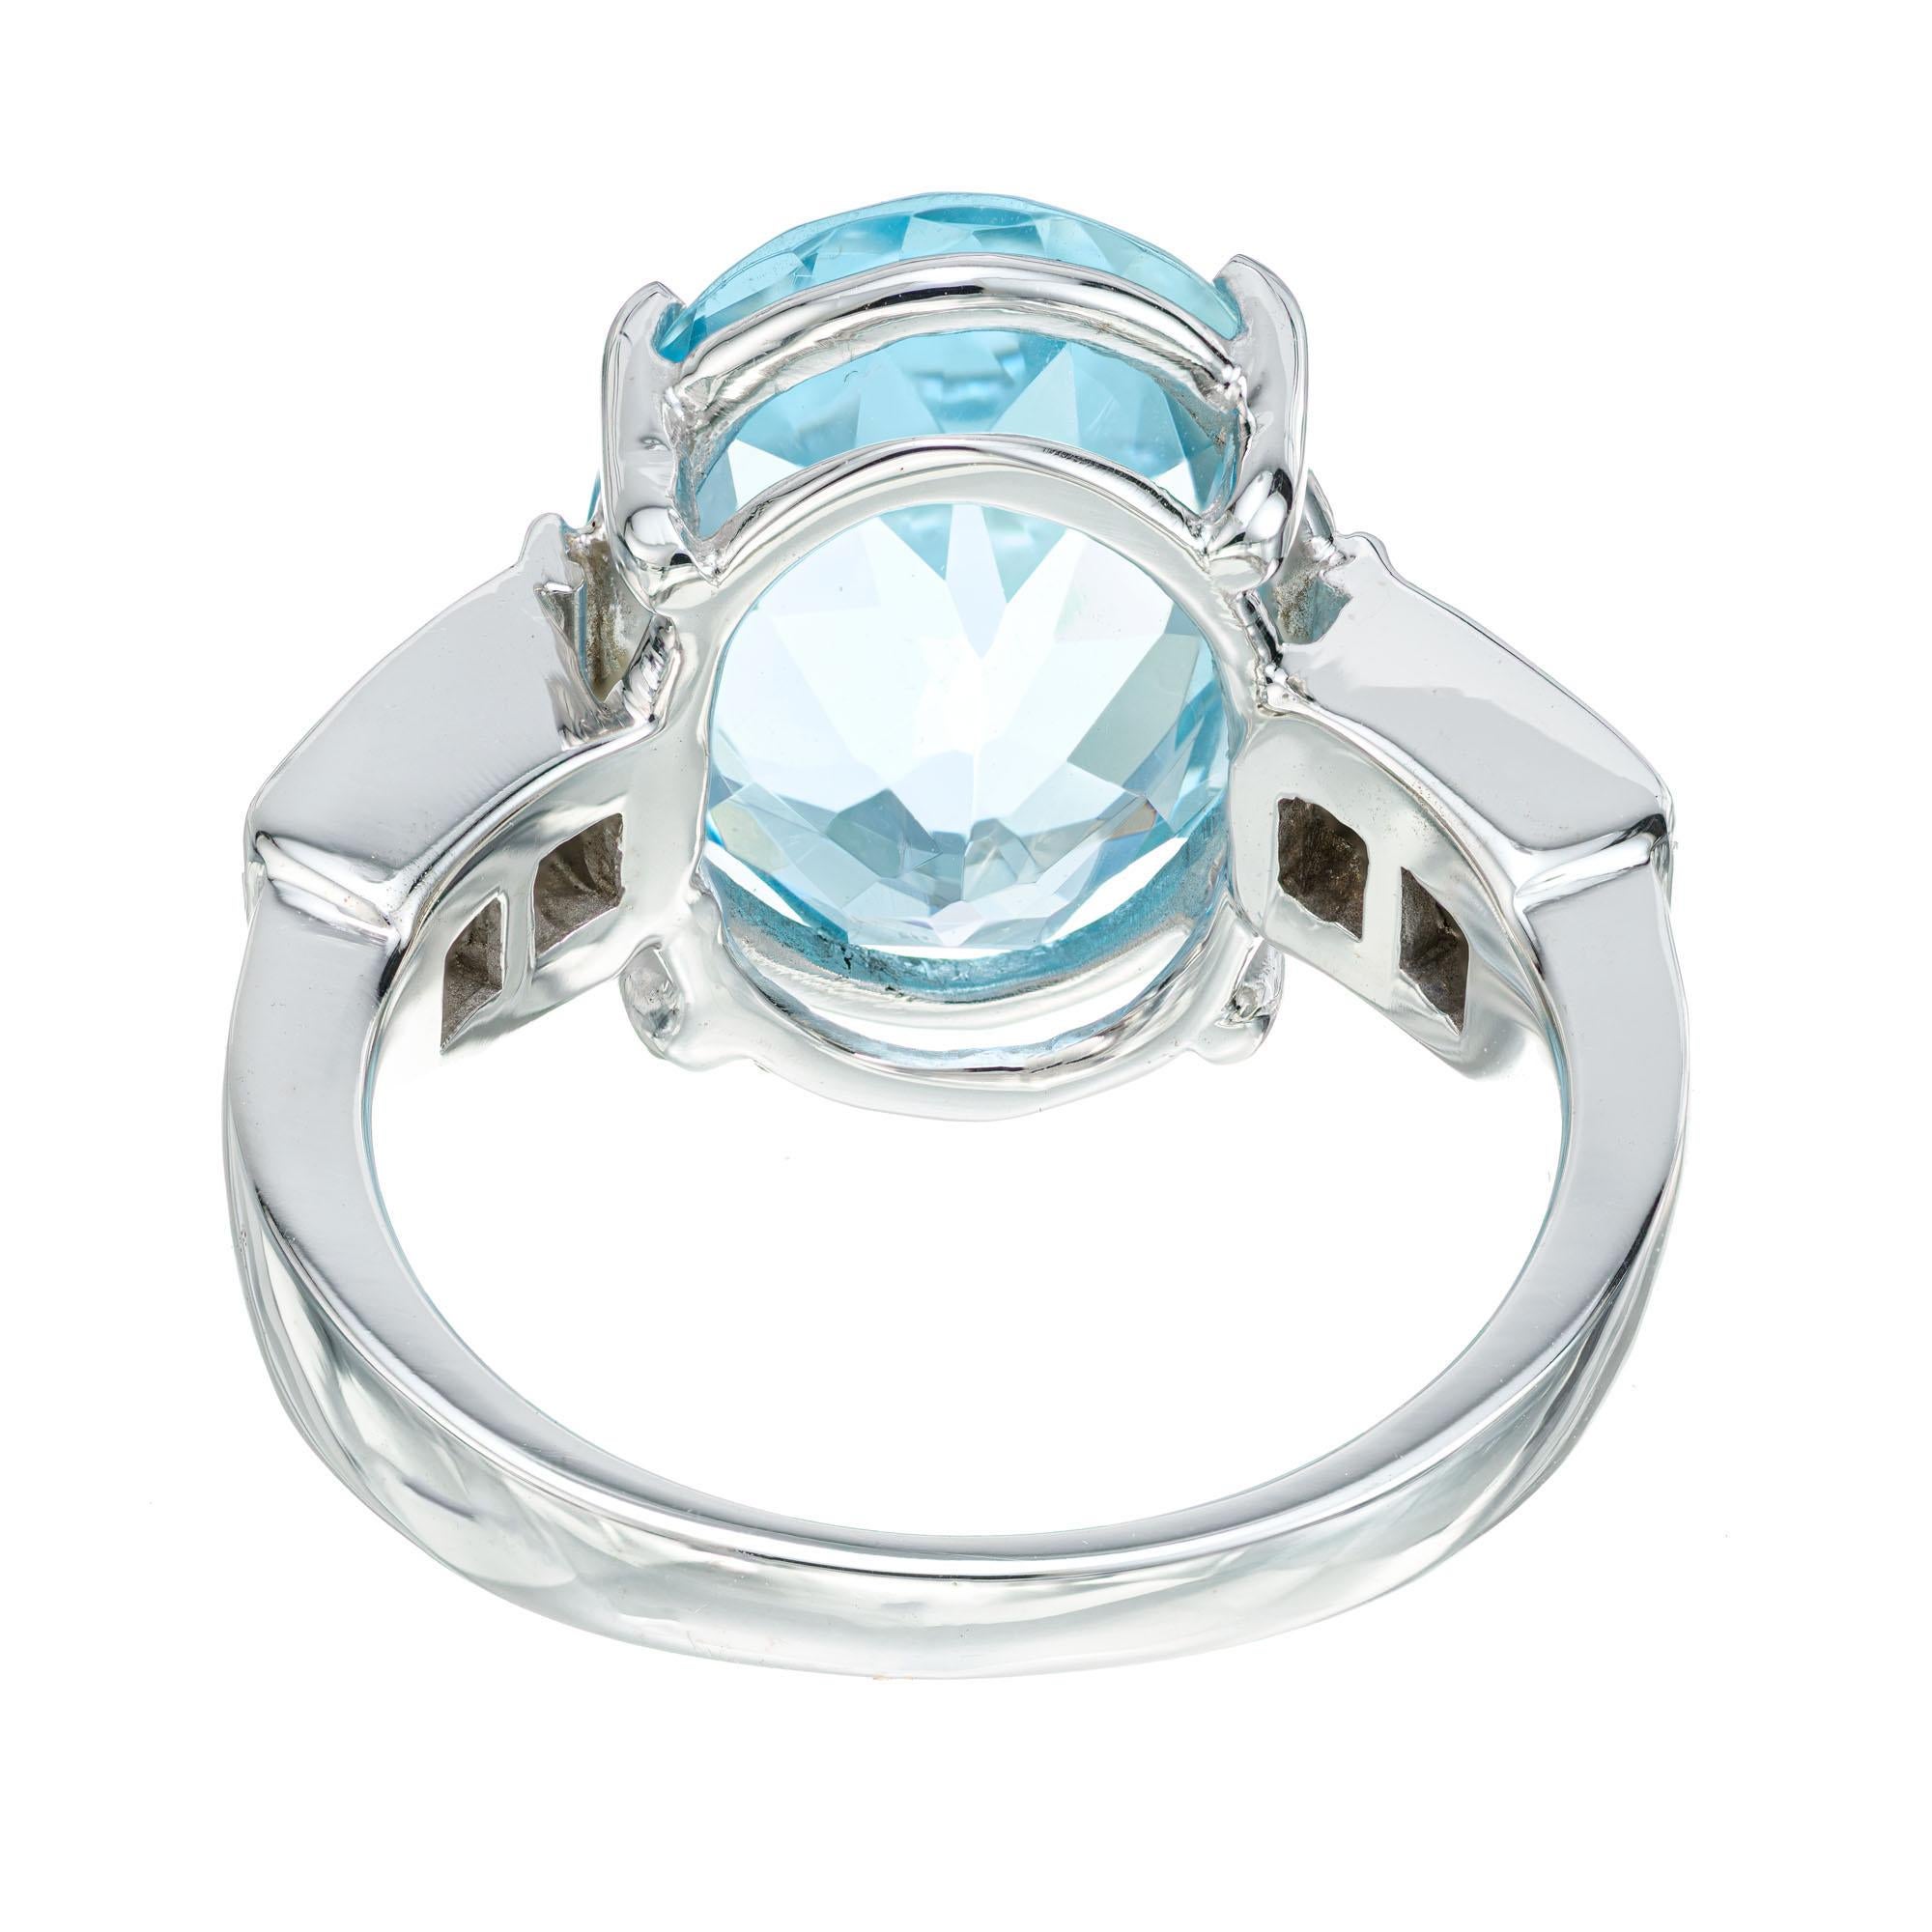 4 carat aquamarine engagement ring